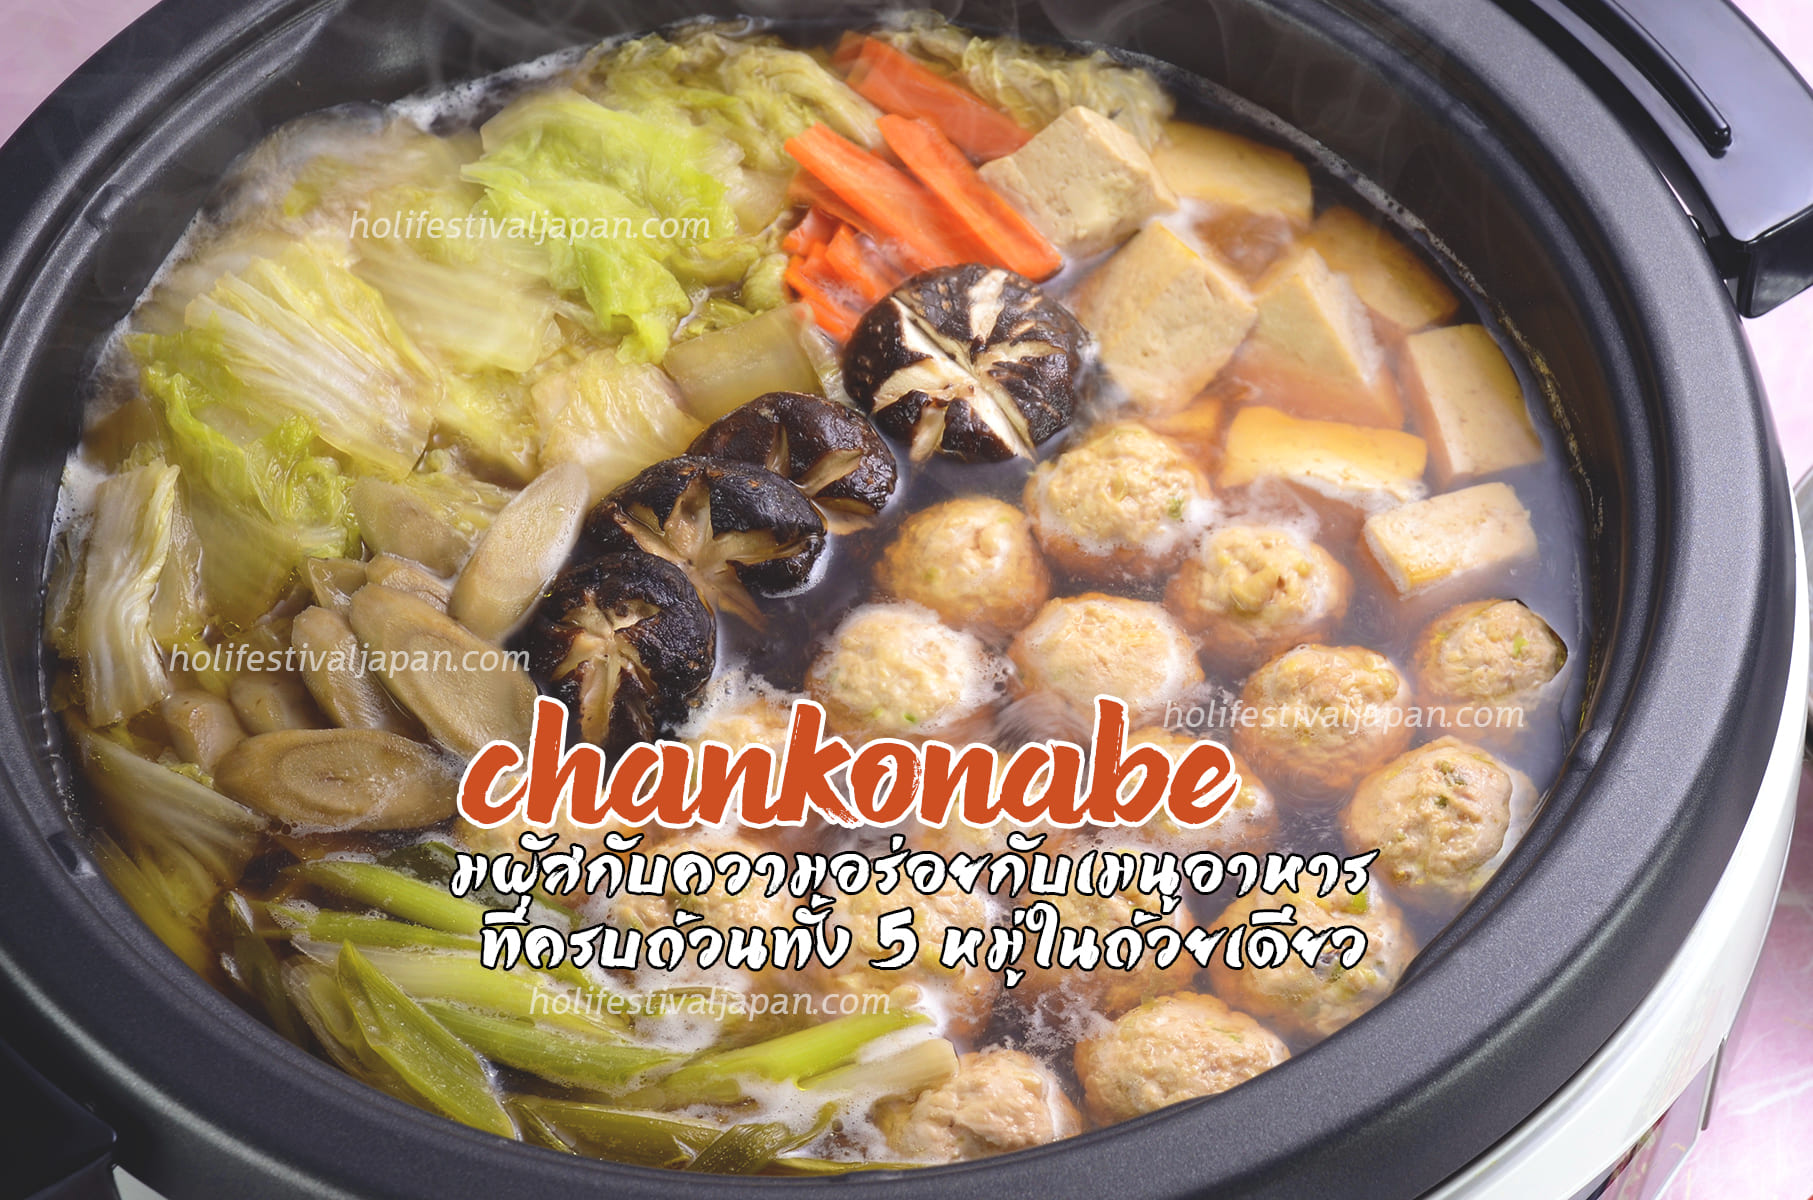 Chankonabe สัมผัสกับความอร่อยกับเมนูอาหารที่ครบถ้วนทั้ง 5 หมู่ในถ้วยเดียว